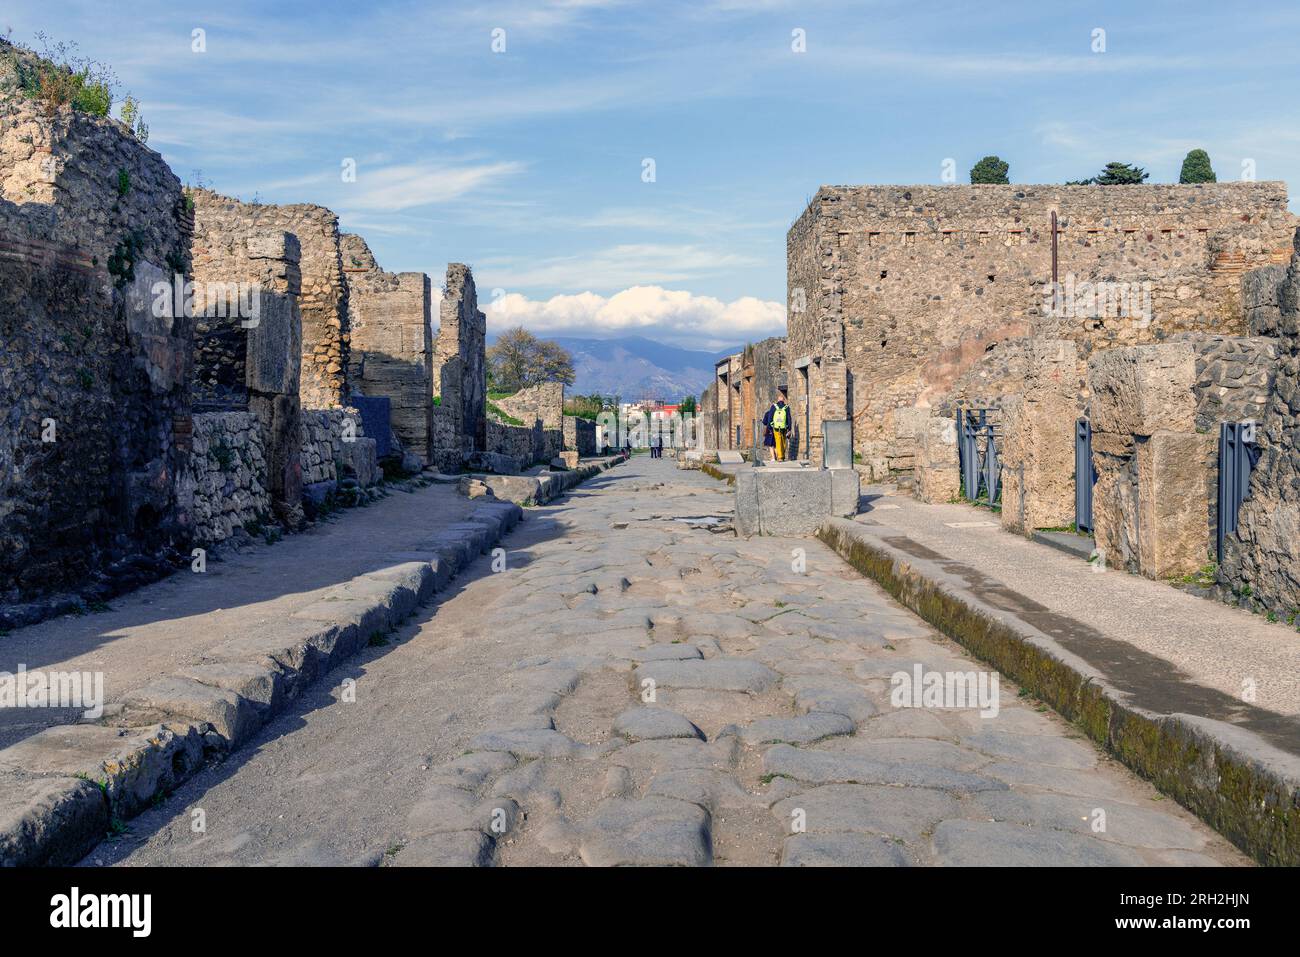 Ausgrabungsstätte Pompeji, Kampanien, Italien. Via dell'abbondanza, eine der wichtigsten Straßen der Stadt. Pompeji, Herculaneum und Torre Annunziata Stockfoto